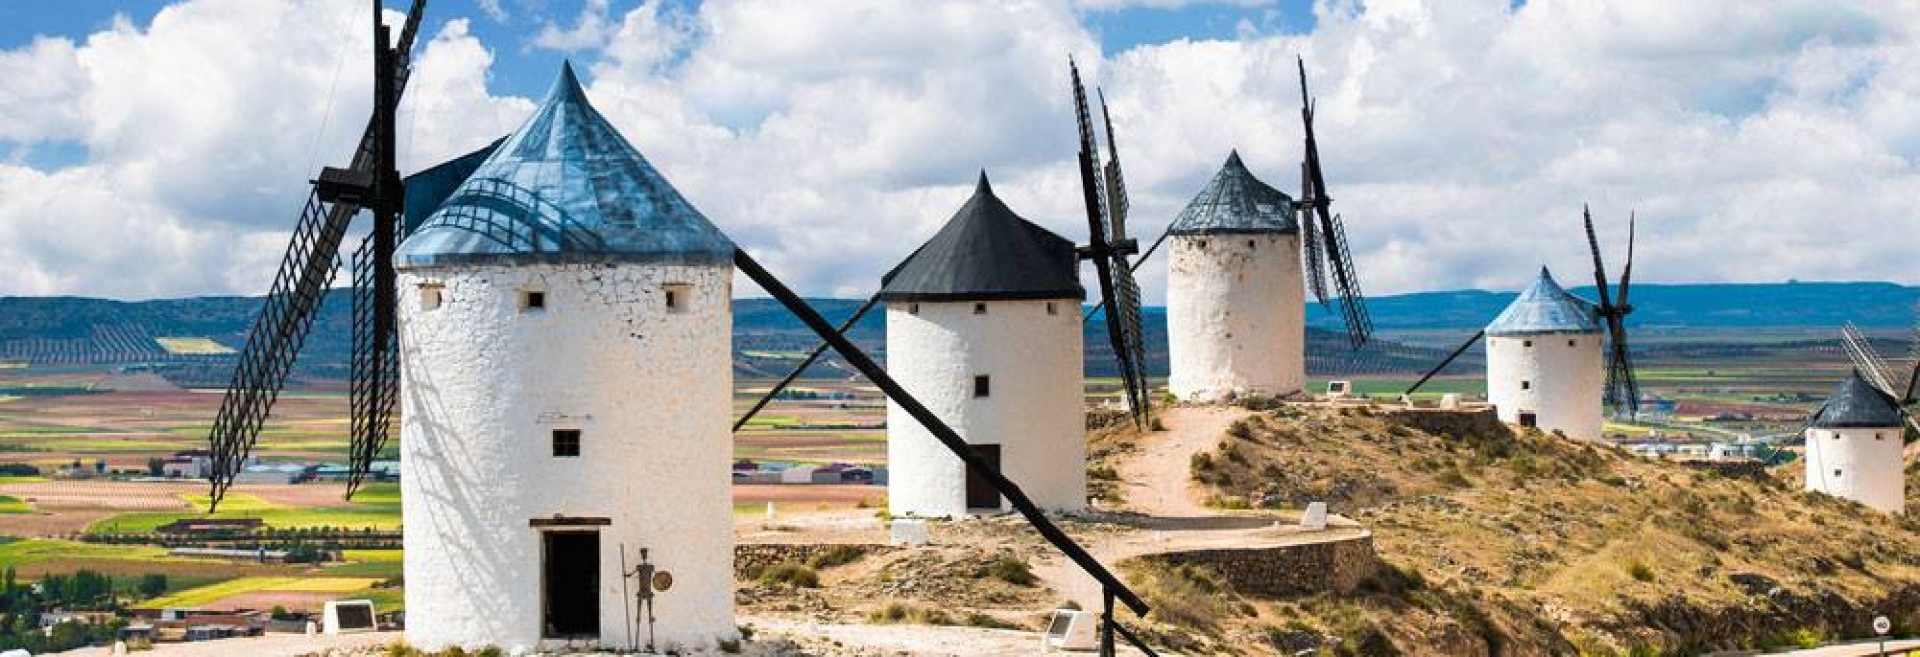 Viaje a La Mancha: Ruta del Quijote, del 16 al 21 de octubre